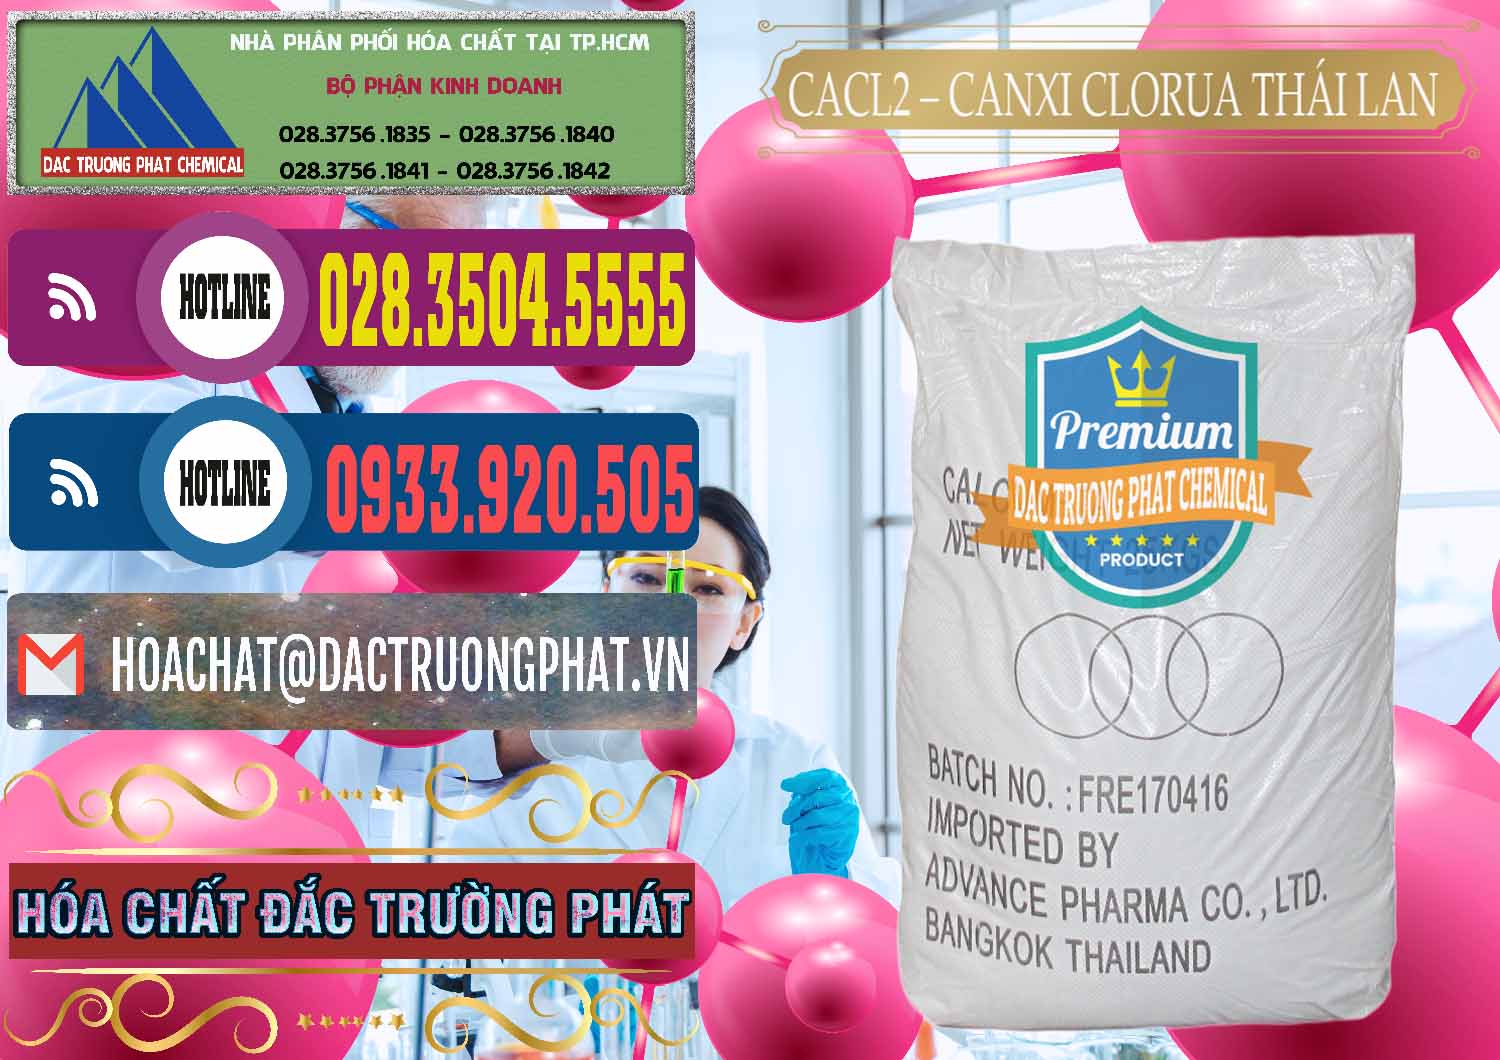 Đơn vị chuyên bán & phân phối CaCl2 – Canxi Clorua 96% Thái Lan - 0042 - Công ty chuyên cung cấp & bán hóa chất tại TP.HCM - muabanhoachat.com.vn